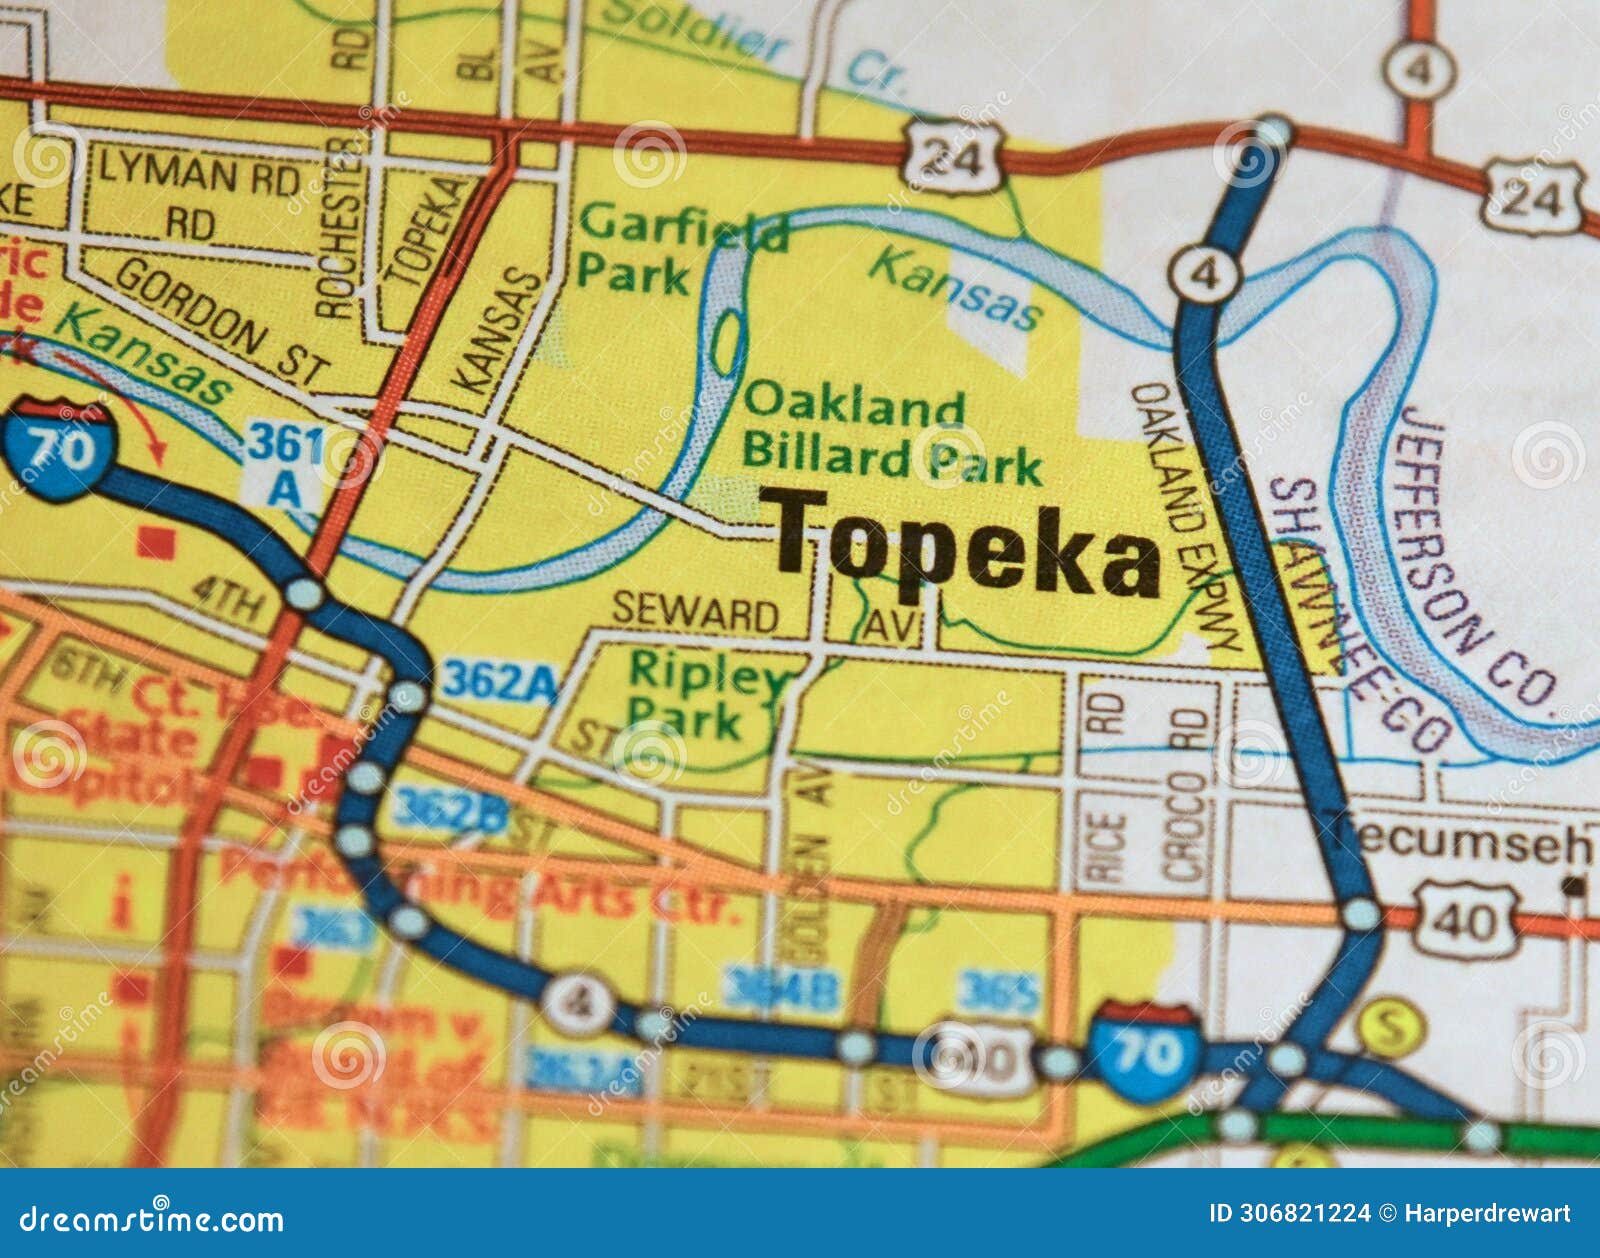 map image of topeka, kansas